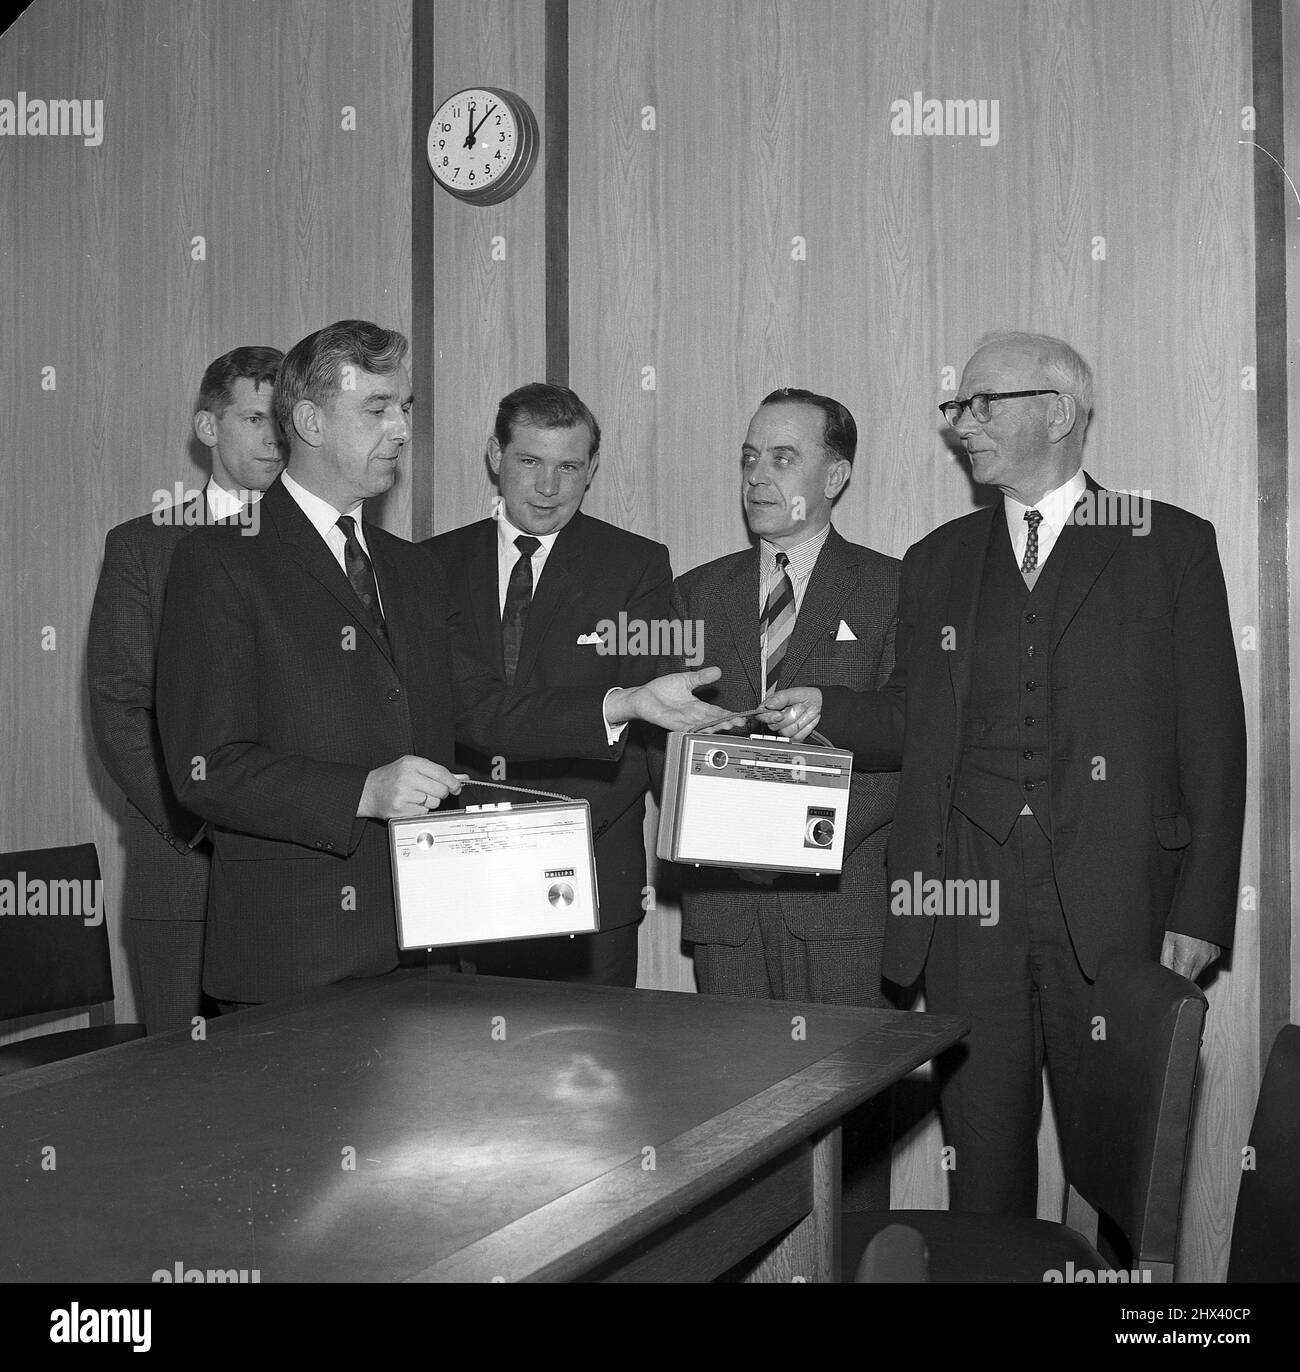 1960s, historisch, stehend im Vorstandszimmer des Unternehmens, eine Reihe von geeigneten Unternehmensleitern, zwei mit ihren Produkten, tragbare Transistor-Radios, England, Großbritannien. Stockfoto